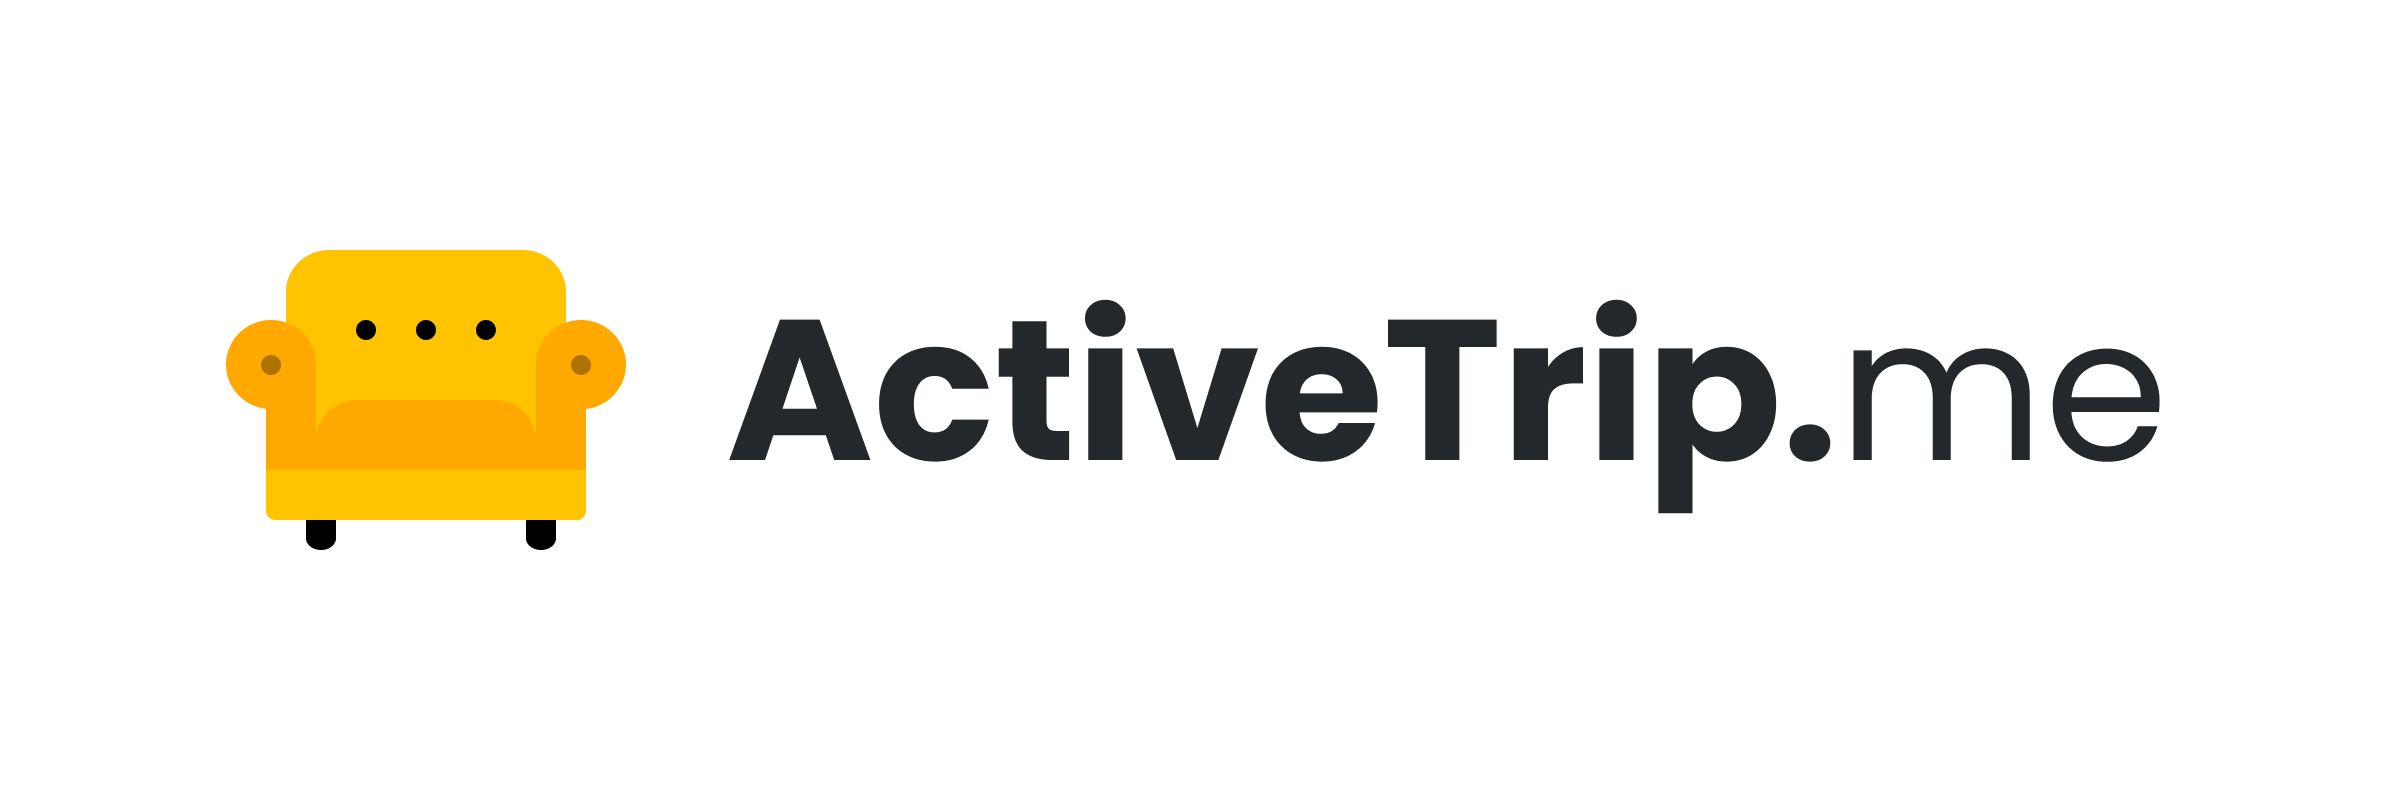 Как мы с друзьями собрали сервис для построения маршрутов для походов и велопутешествий ActiveTrip.me - 5